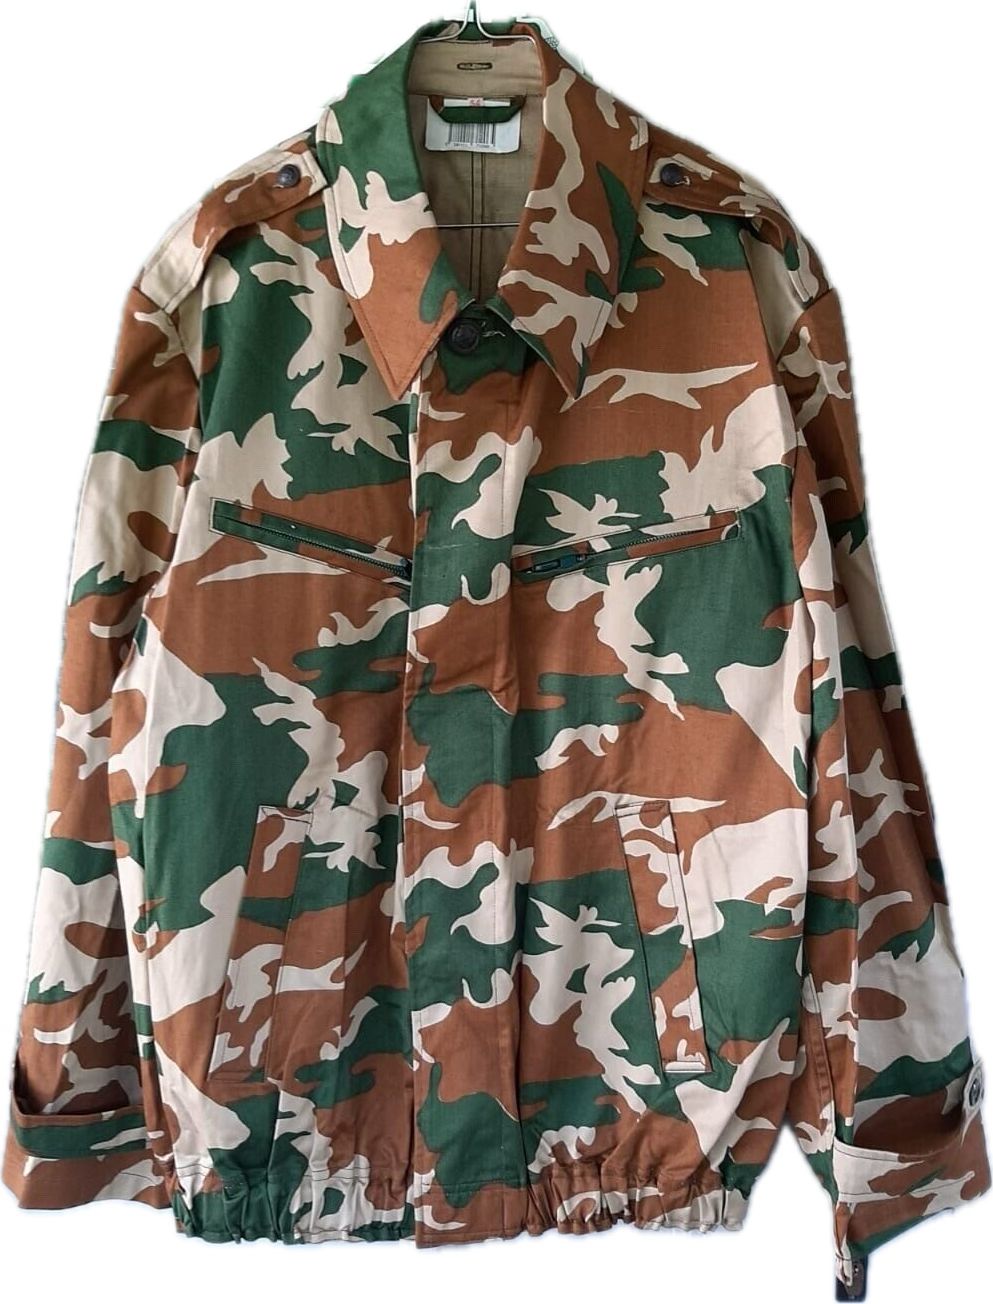 Rare camouflage Pikastan Army Jacket